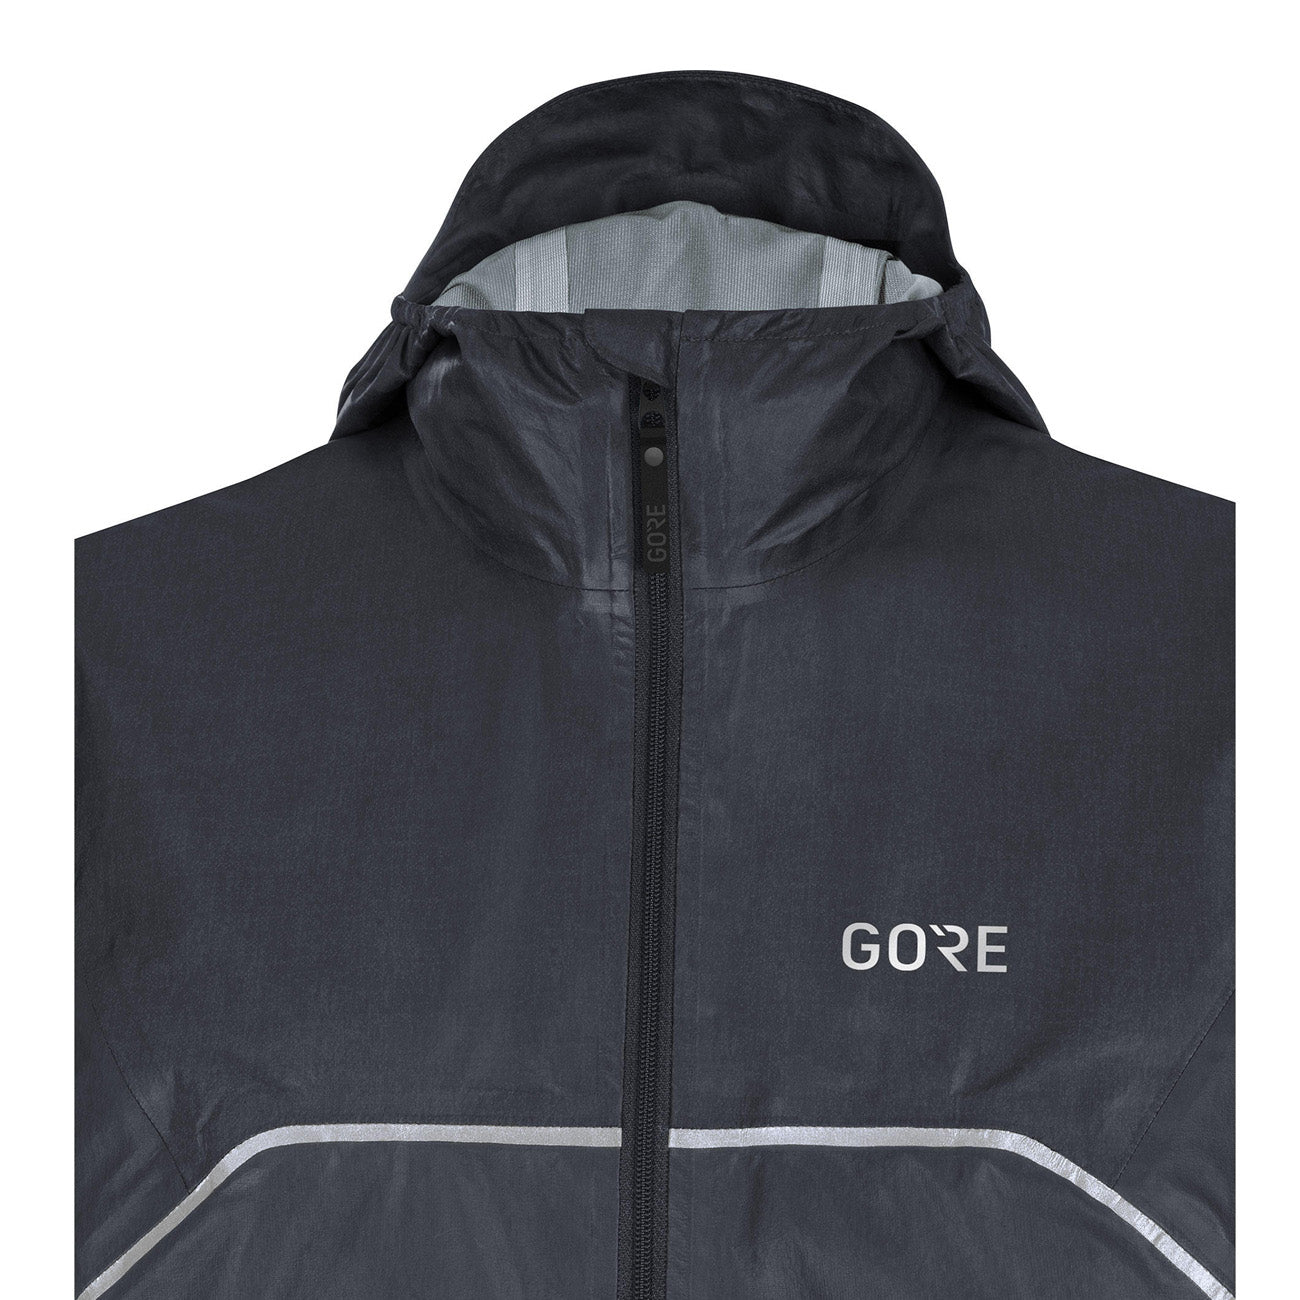 Gore Wear R7 GTX Shakedry Trail Hooded Jacket Damen Black